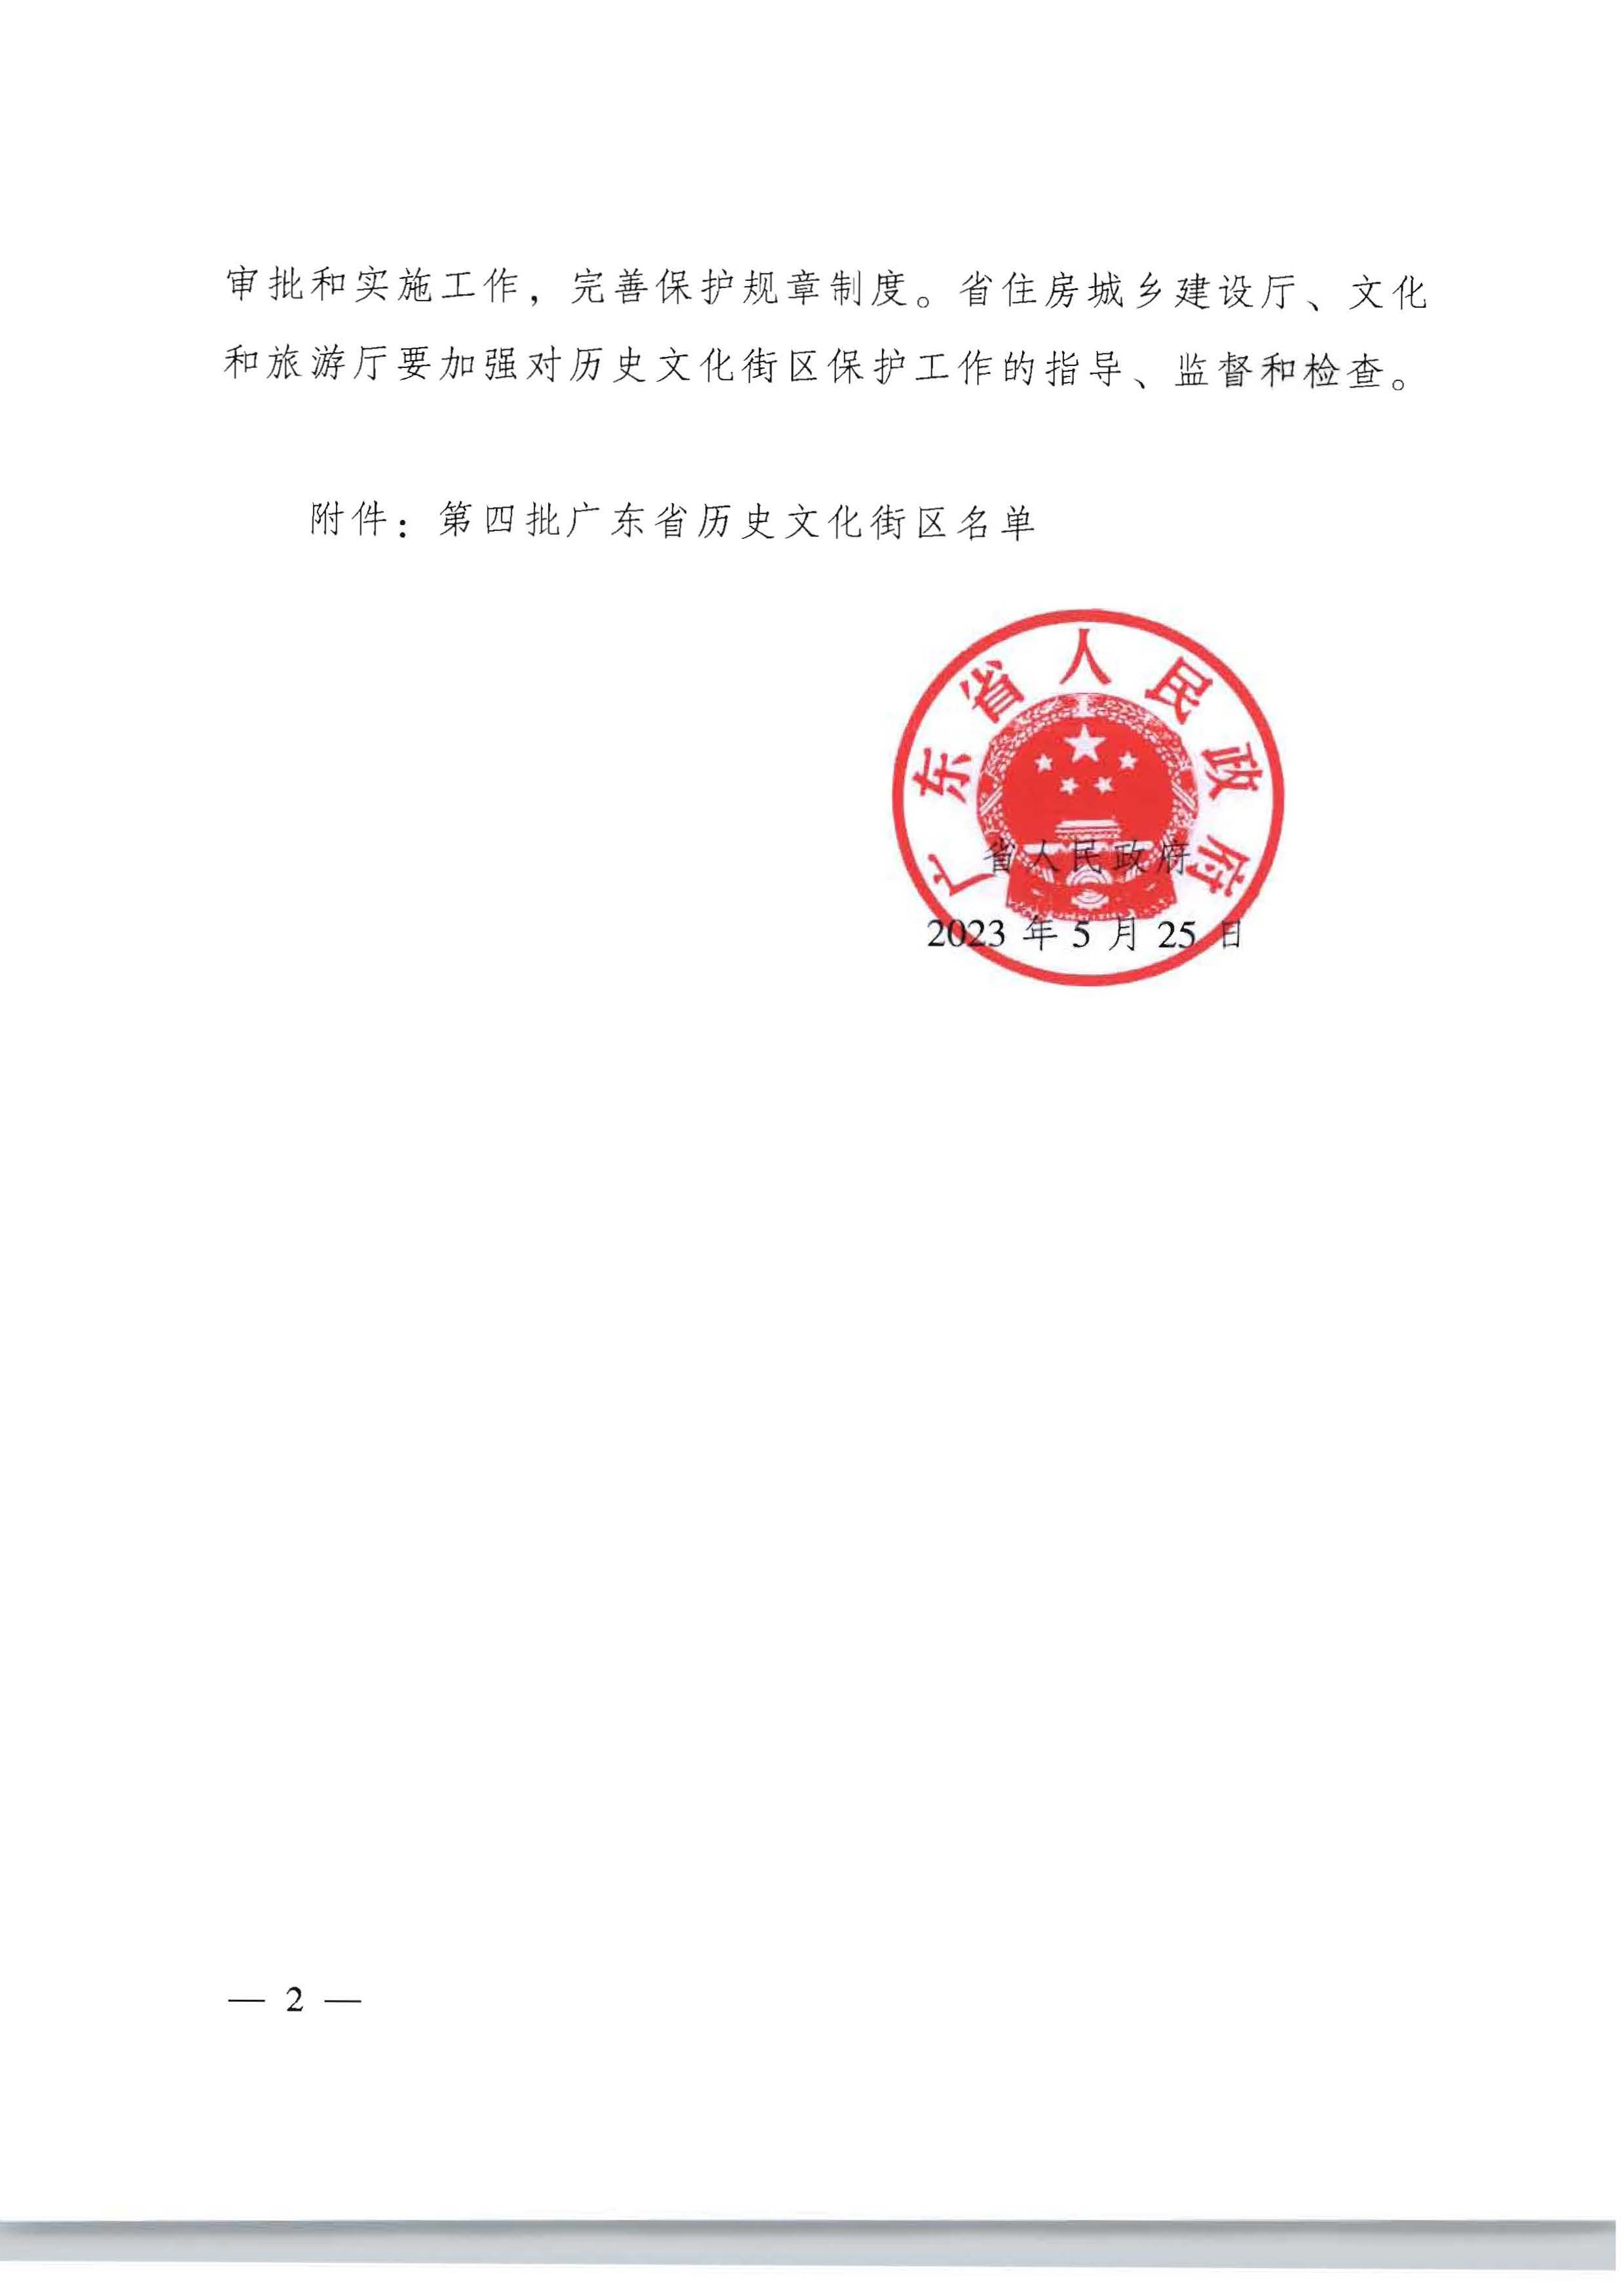 广东省人民政府关于公布第四批广东省历史文化街区名单的通知_页面_2.jpg